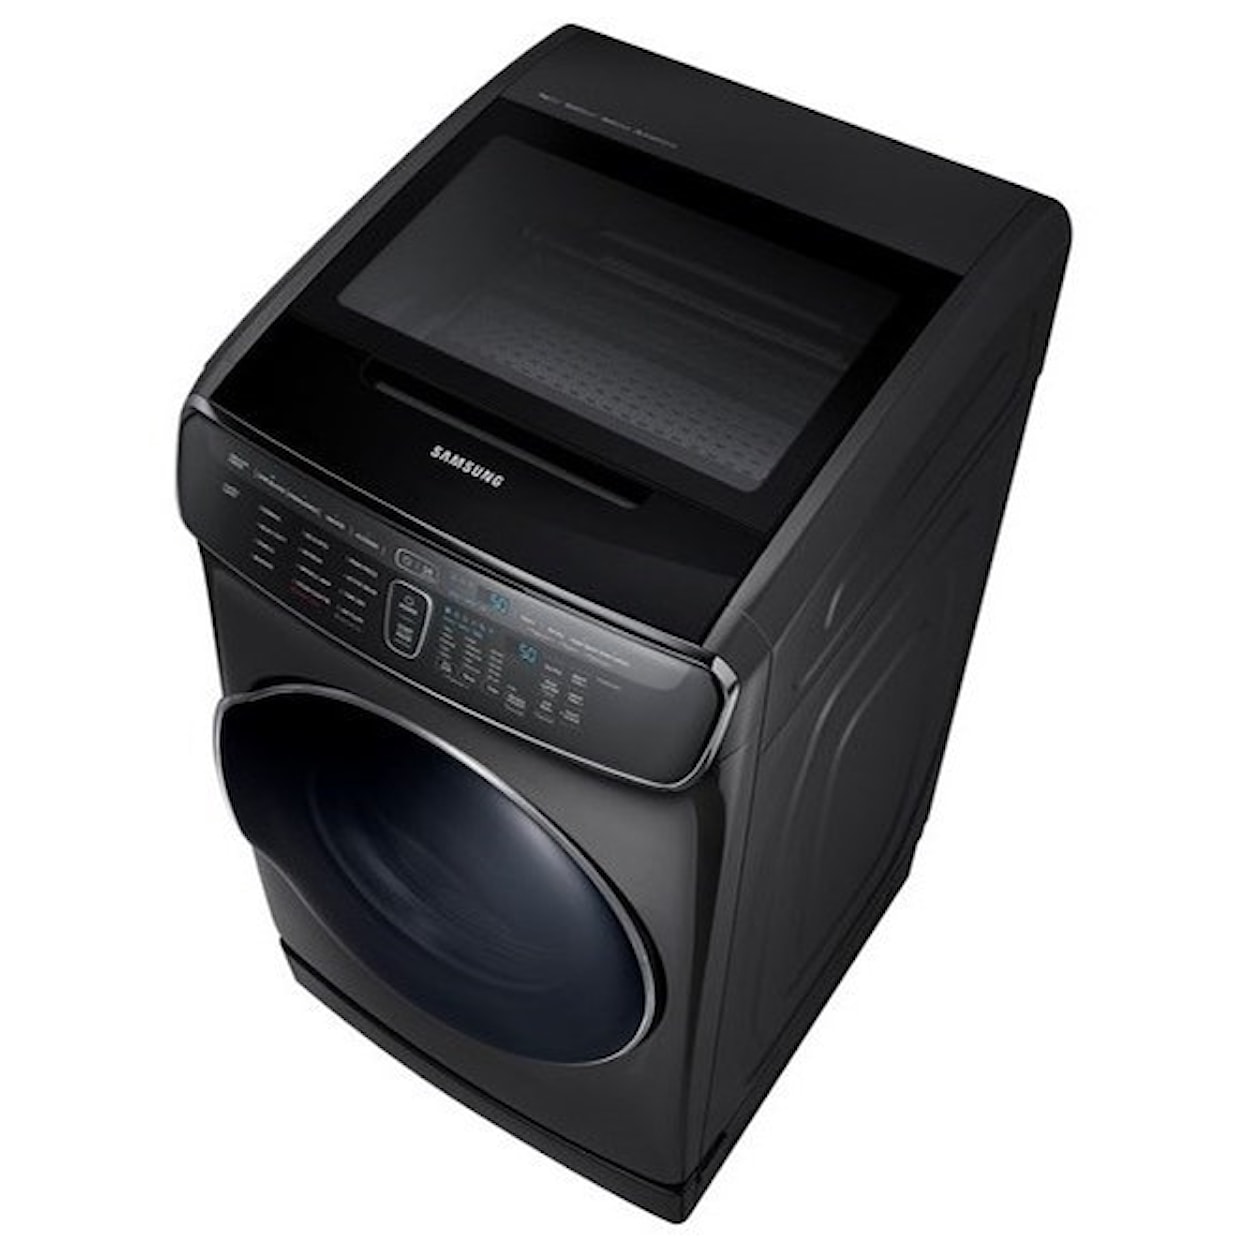 Samsung Appliances Gas Dryers - Samsung DV9900 7.5 cu. ft. FlexDry™ Gas Dryer